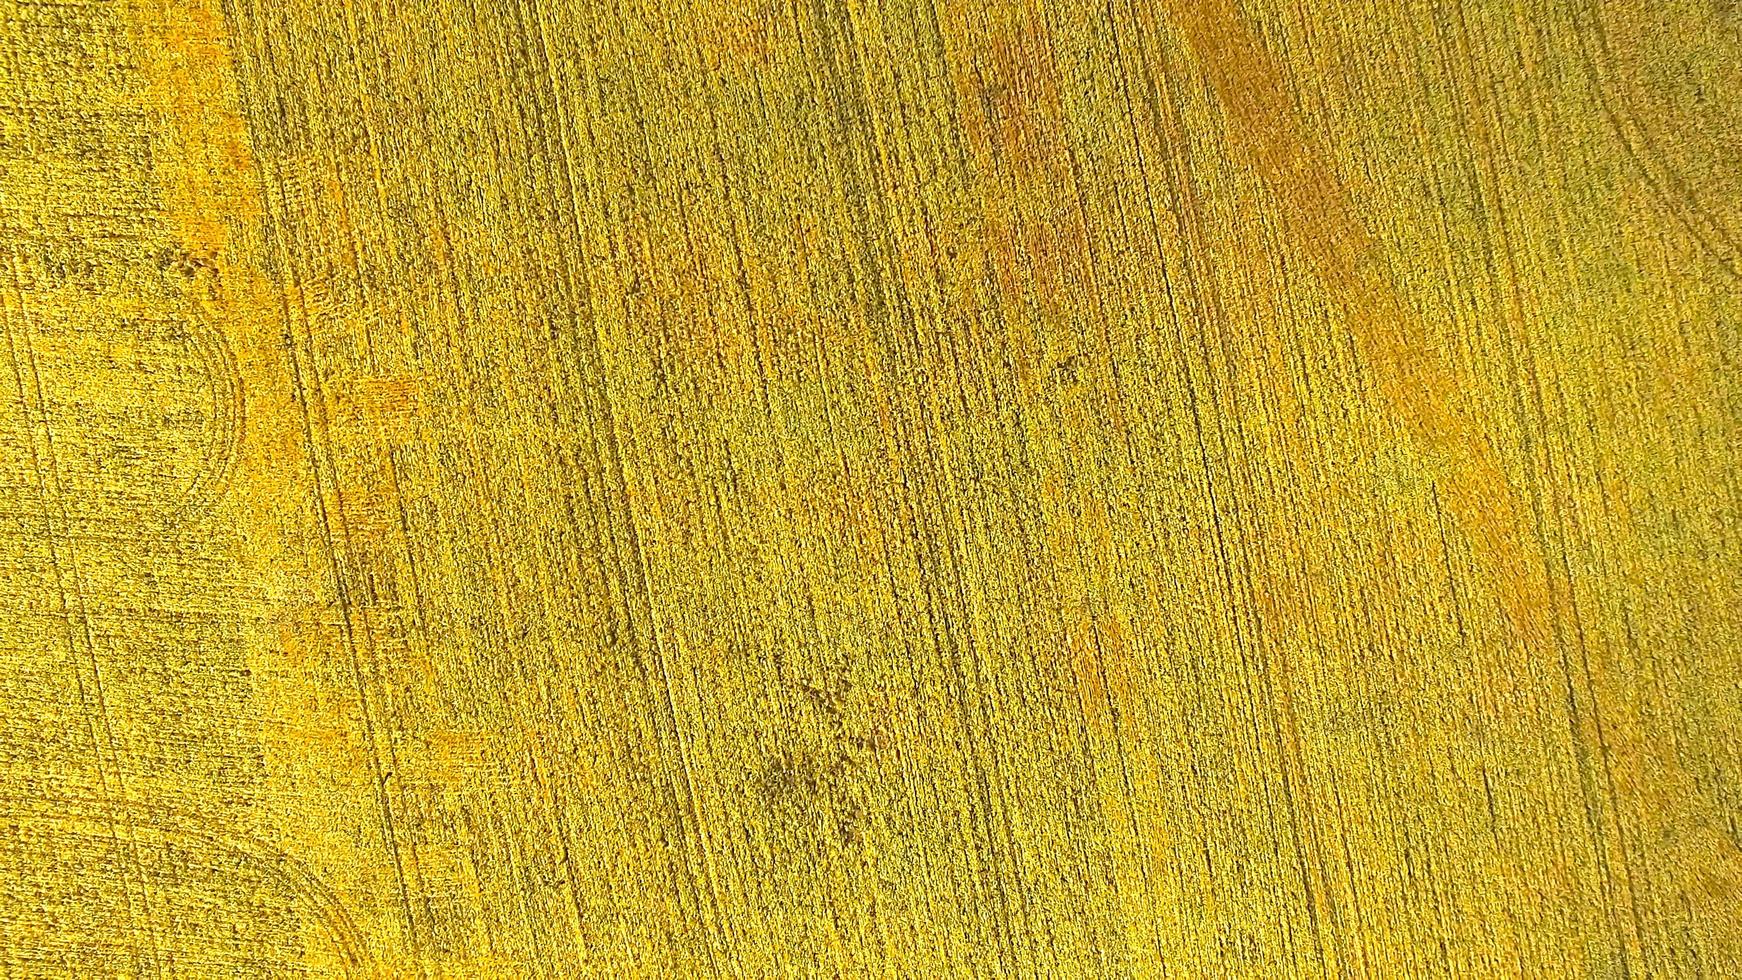 luchtfoto van het gele tarweveld foto